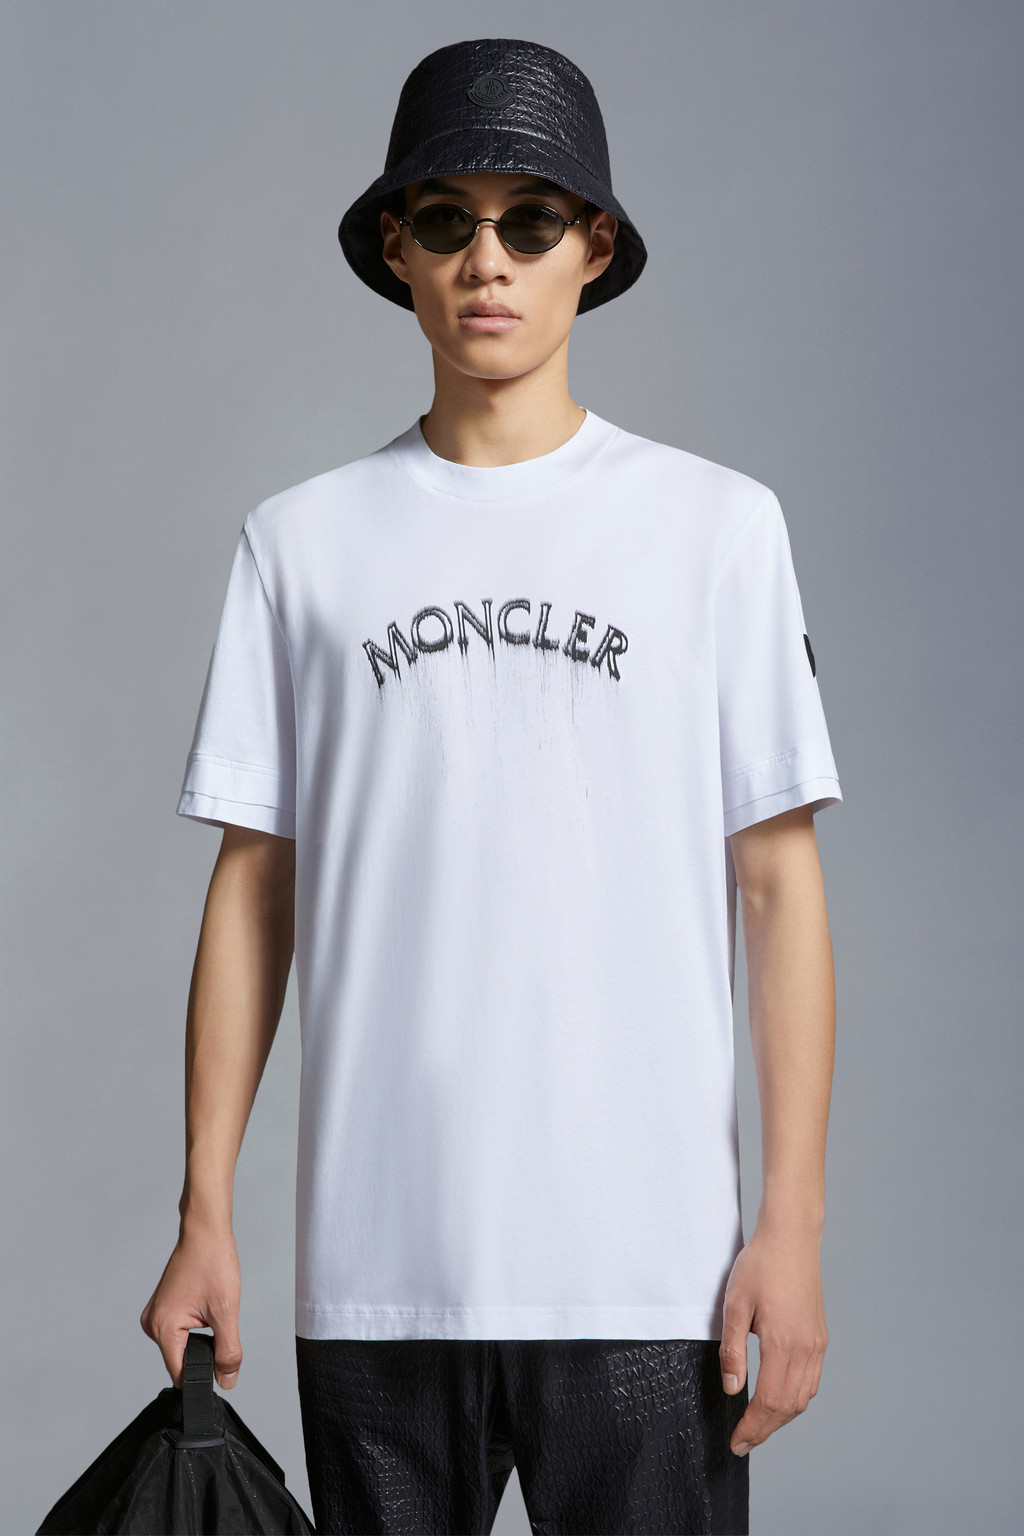 テレワーク関連 モンクレール Tシャツ Sサイズ セット | promochess.com